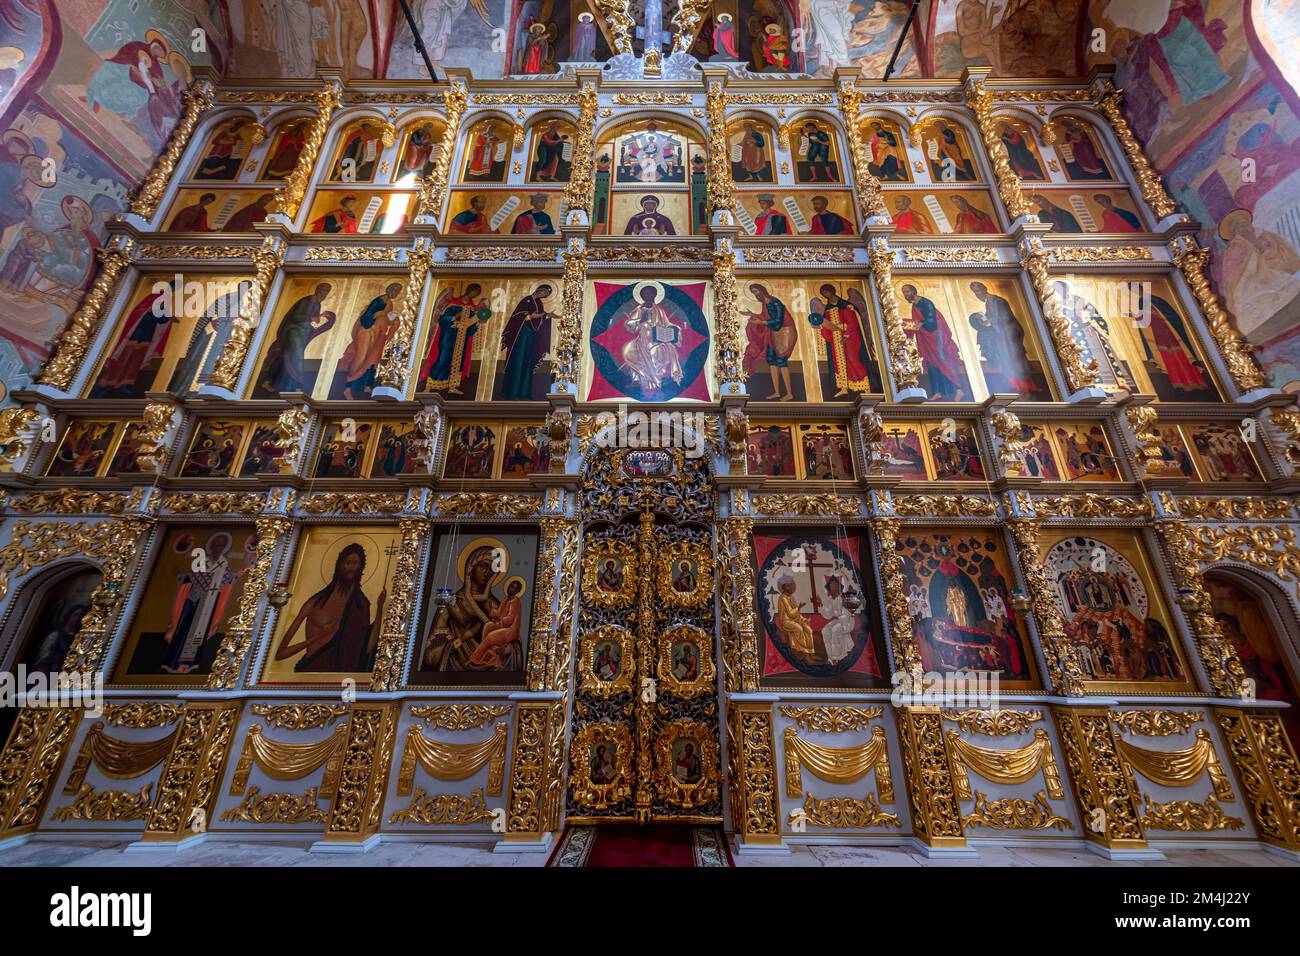 Icons on the wall of the Bogoroditse-Uspenskiy Sviyazhsky Monastery, Unesco site Sviyazhsk, Republic of Tartastan, Russia Stock Photo